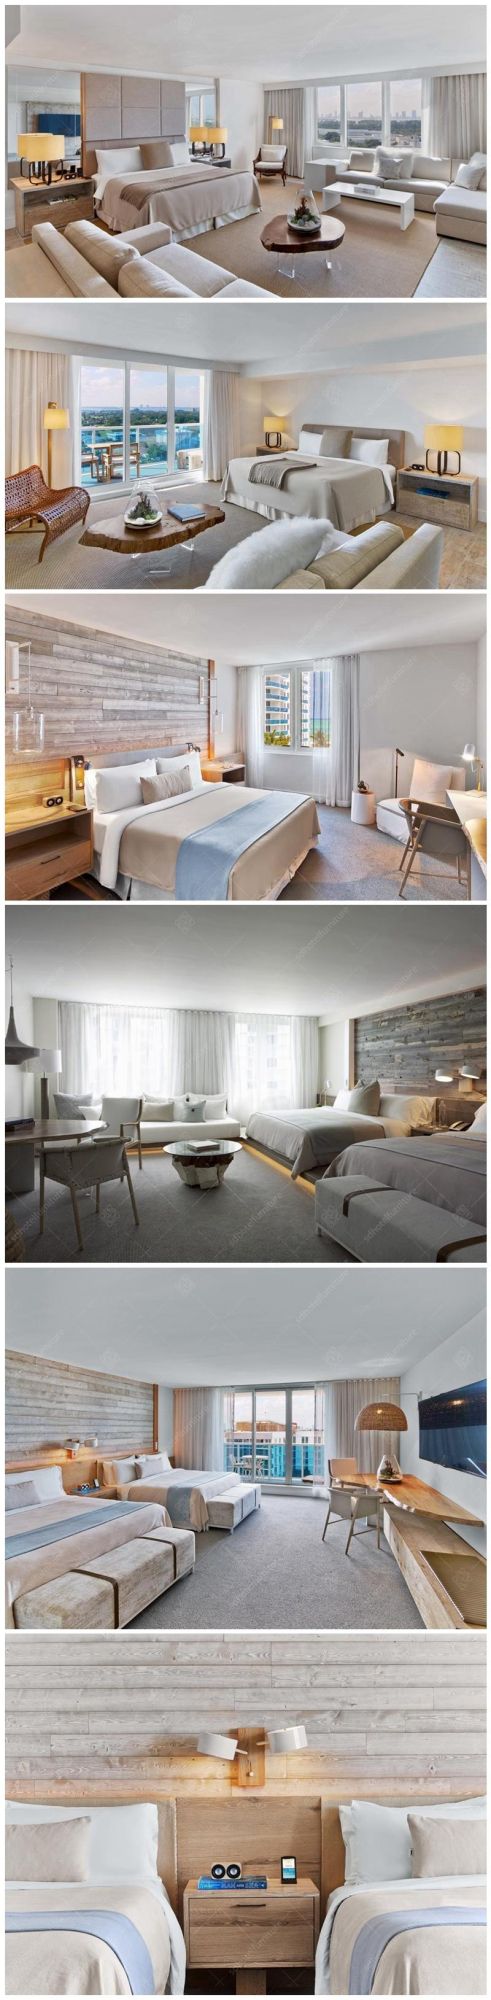 King Size Bedroom Original Style 5 Star Hotel Bedroom Furniture Sets Commercial Furniture